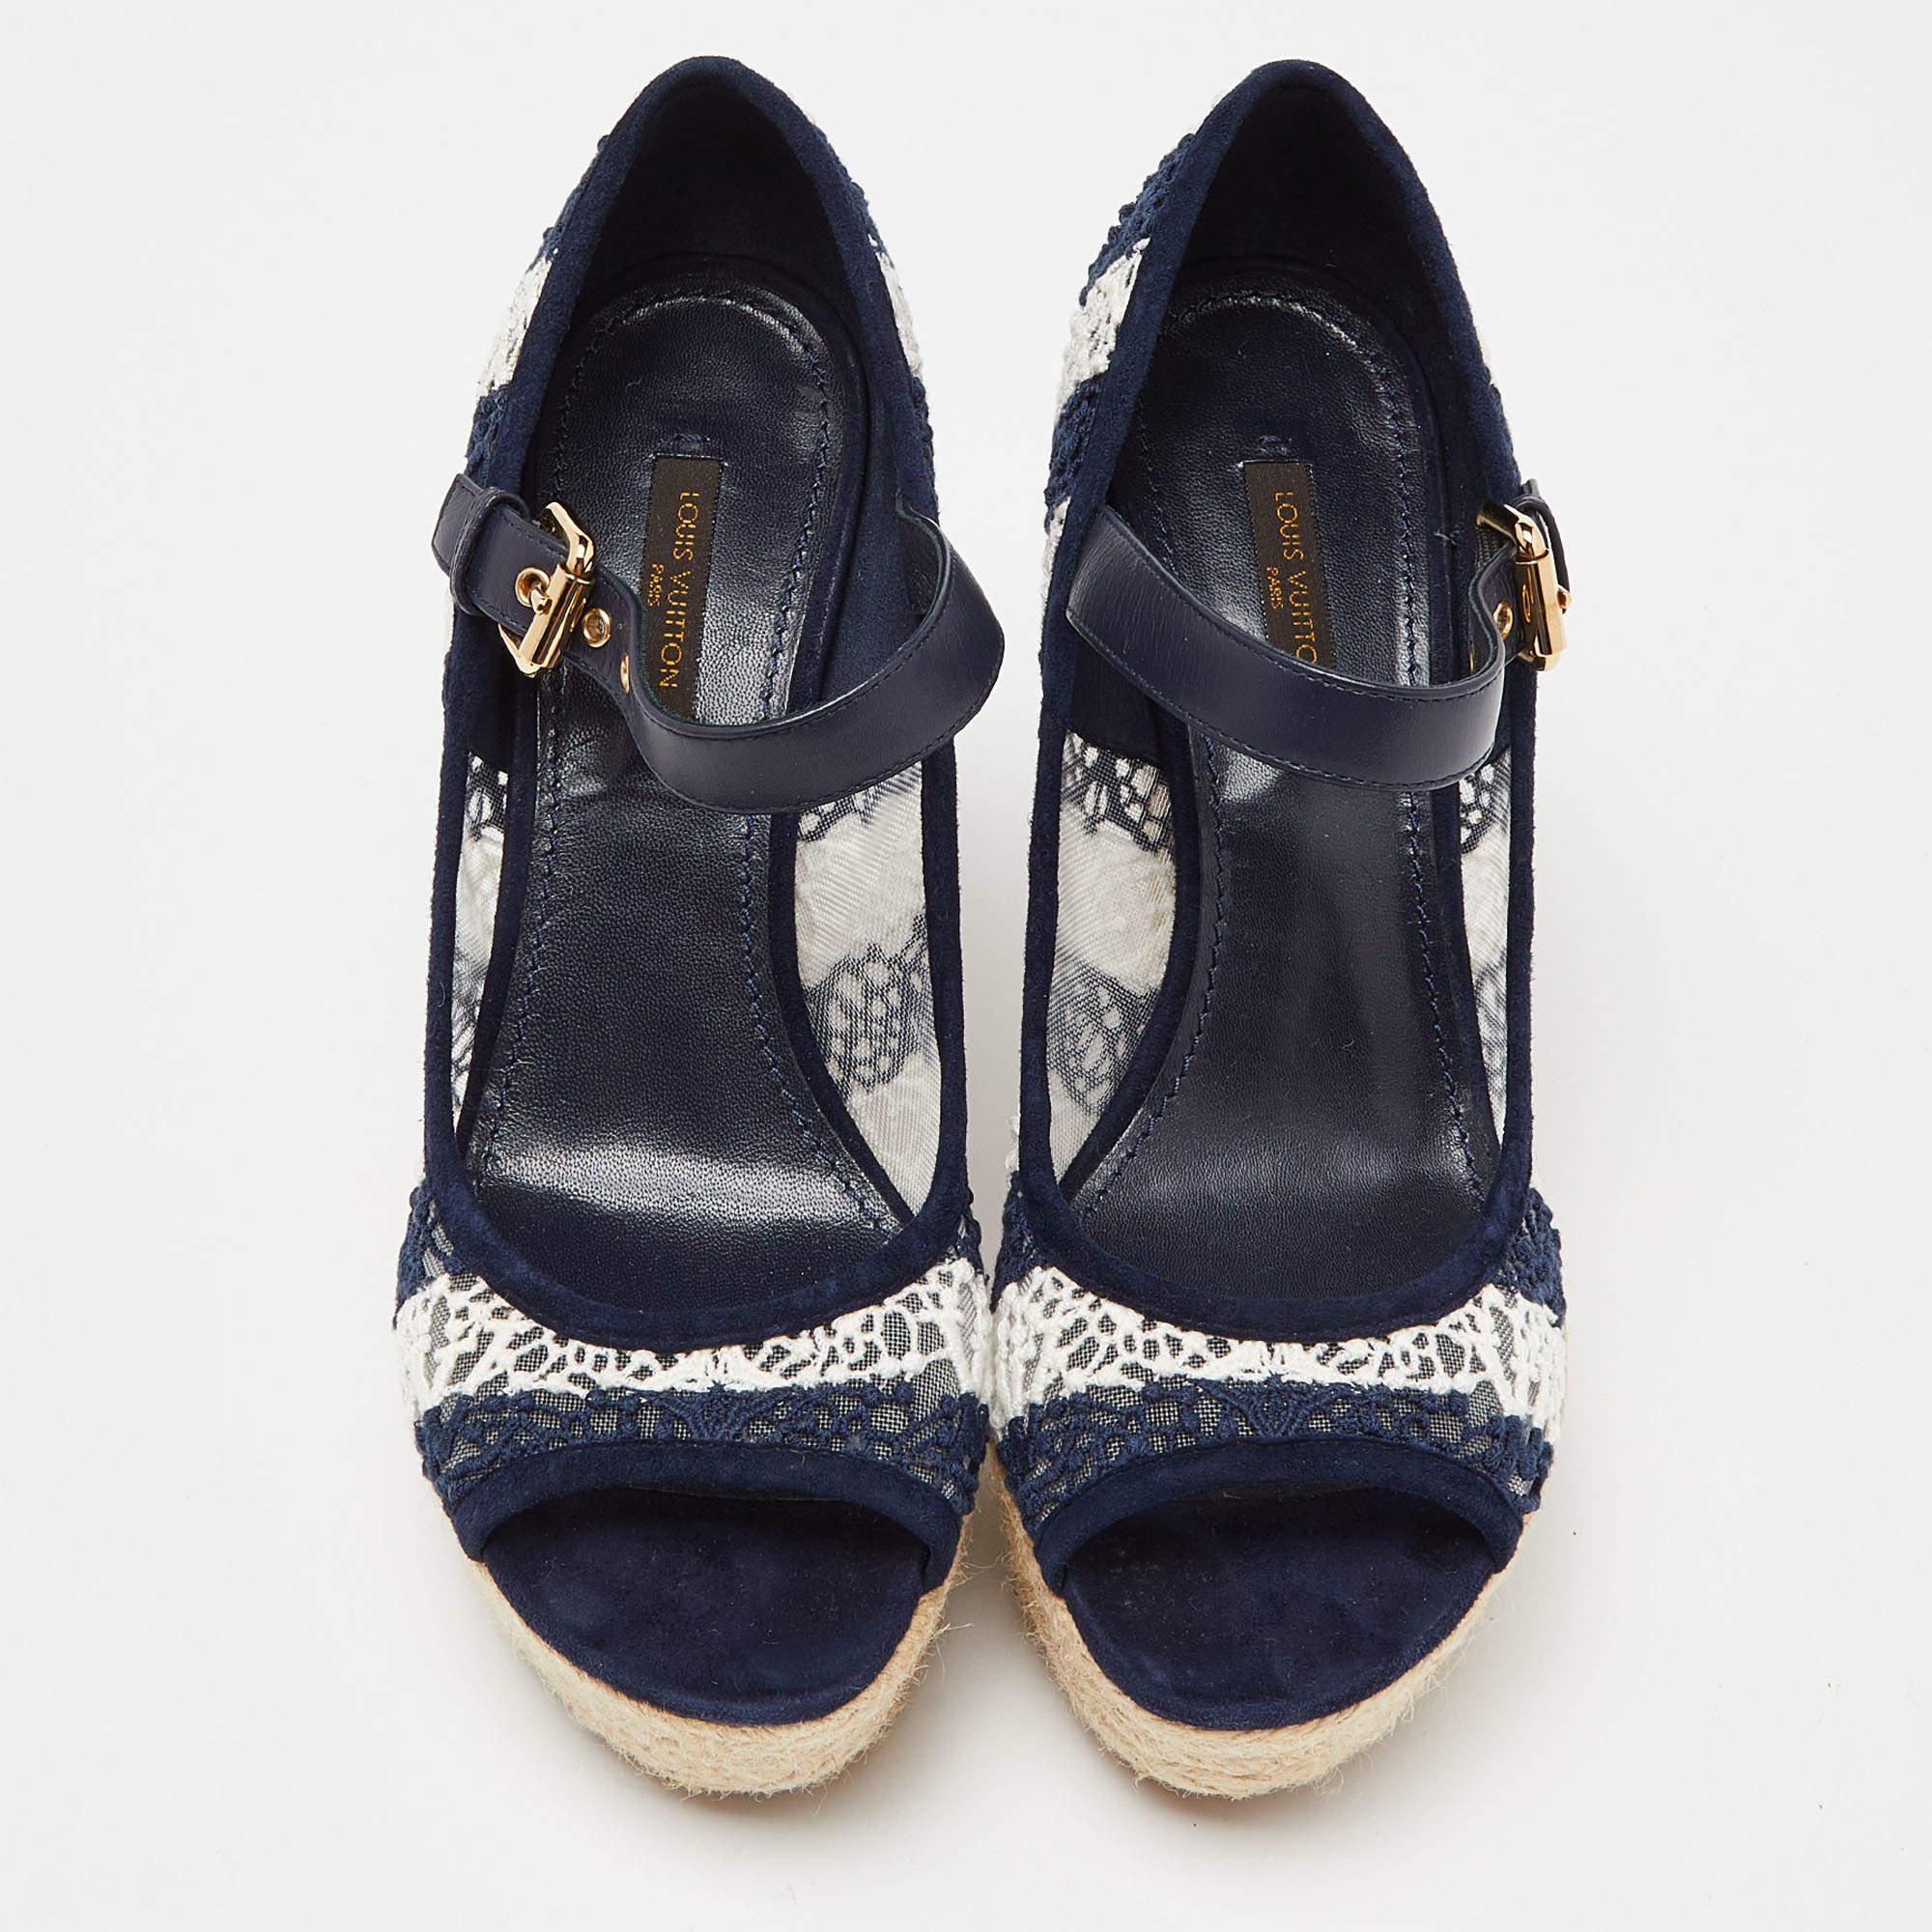 La tradition d'excellence de la maison de couture, associée à une sensibilité au design moderne, fait de ces sandales Louis Vuitton un choix fabuleux. Ils vous aideront à obtenir un look chic en toute simplicité.

LOUIS VUITTON